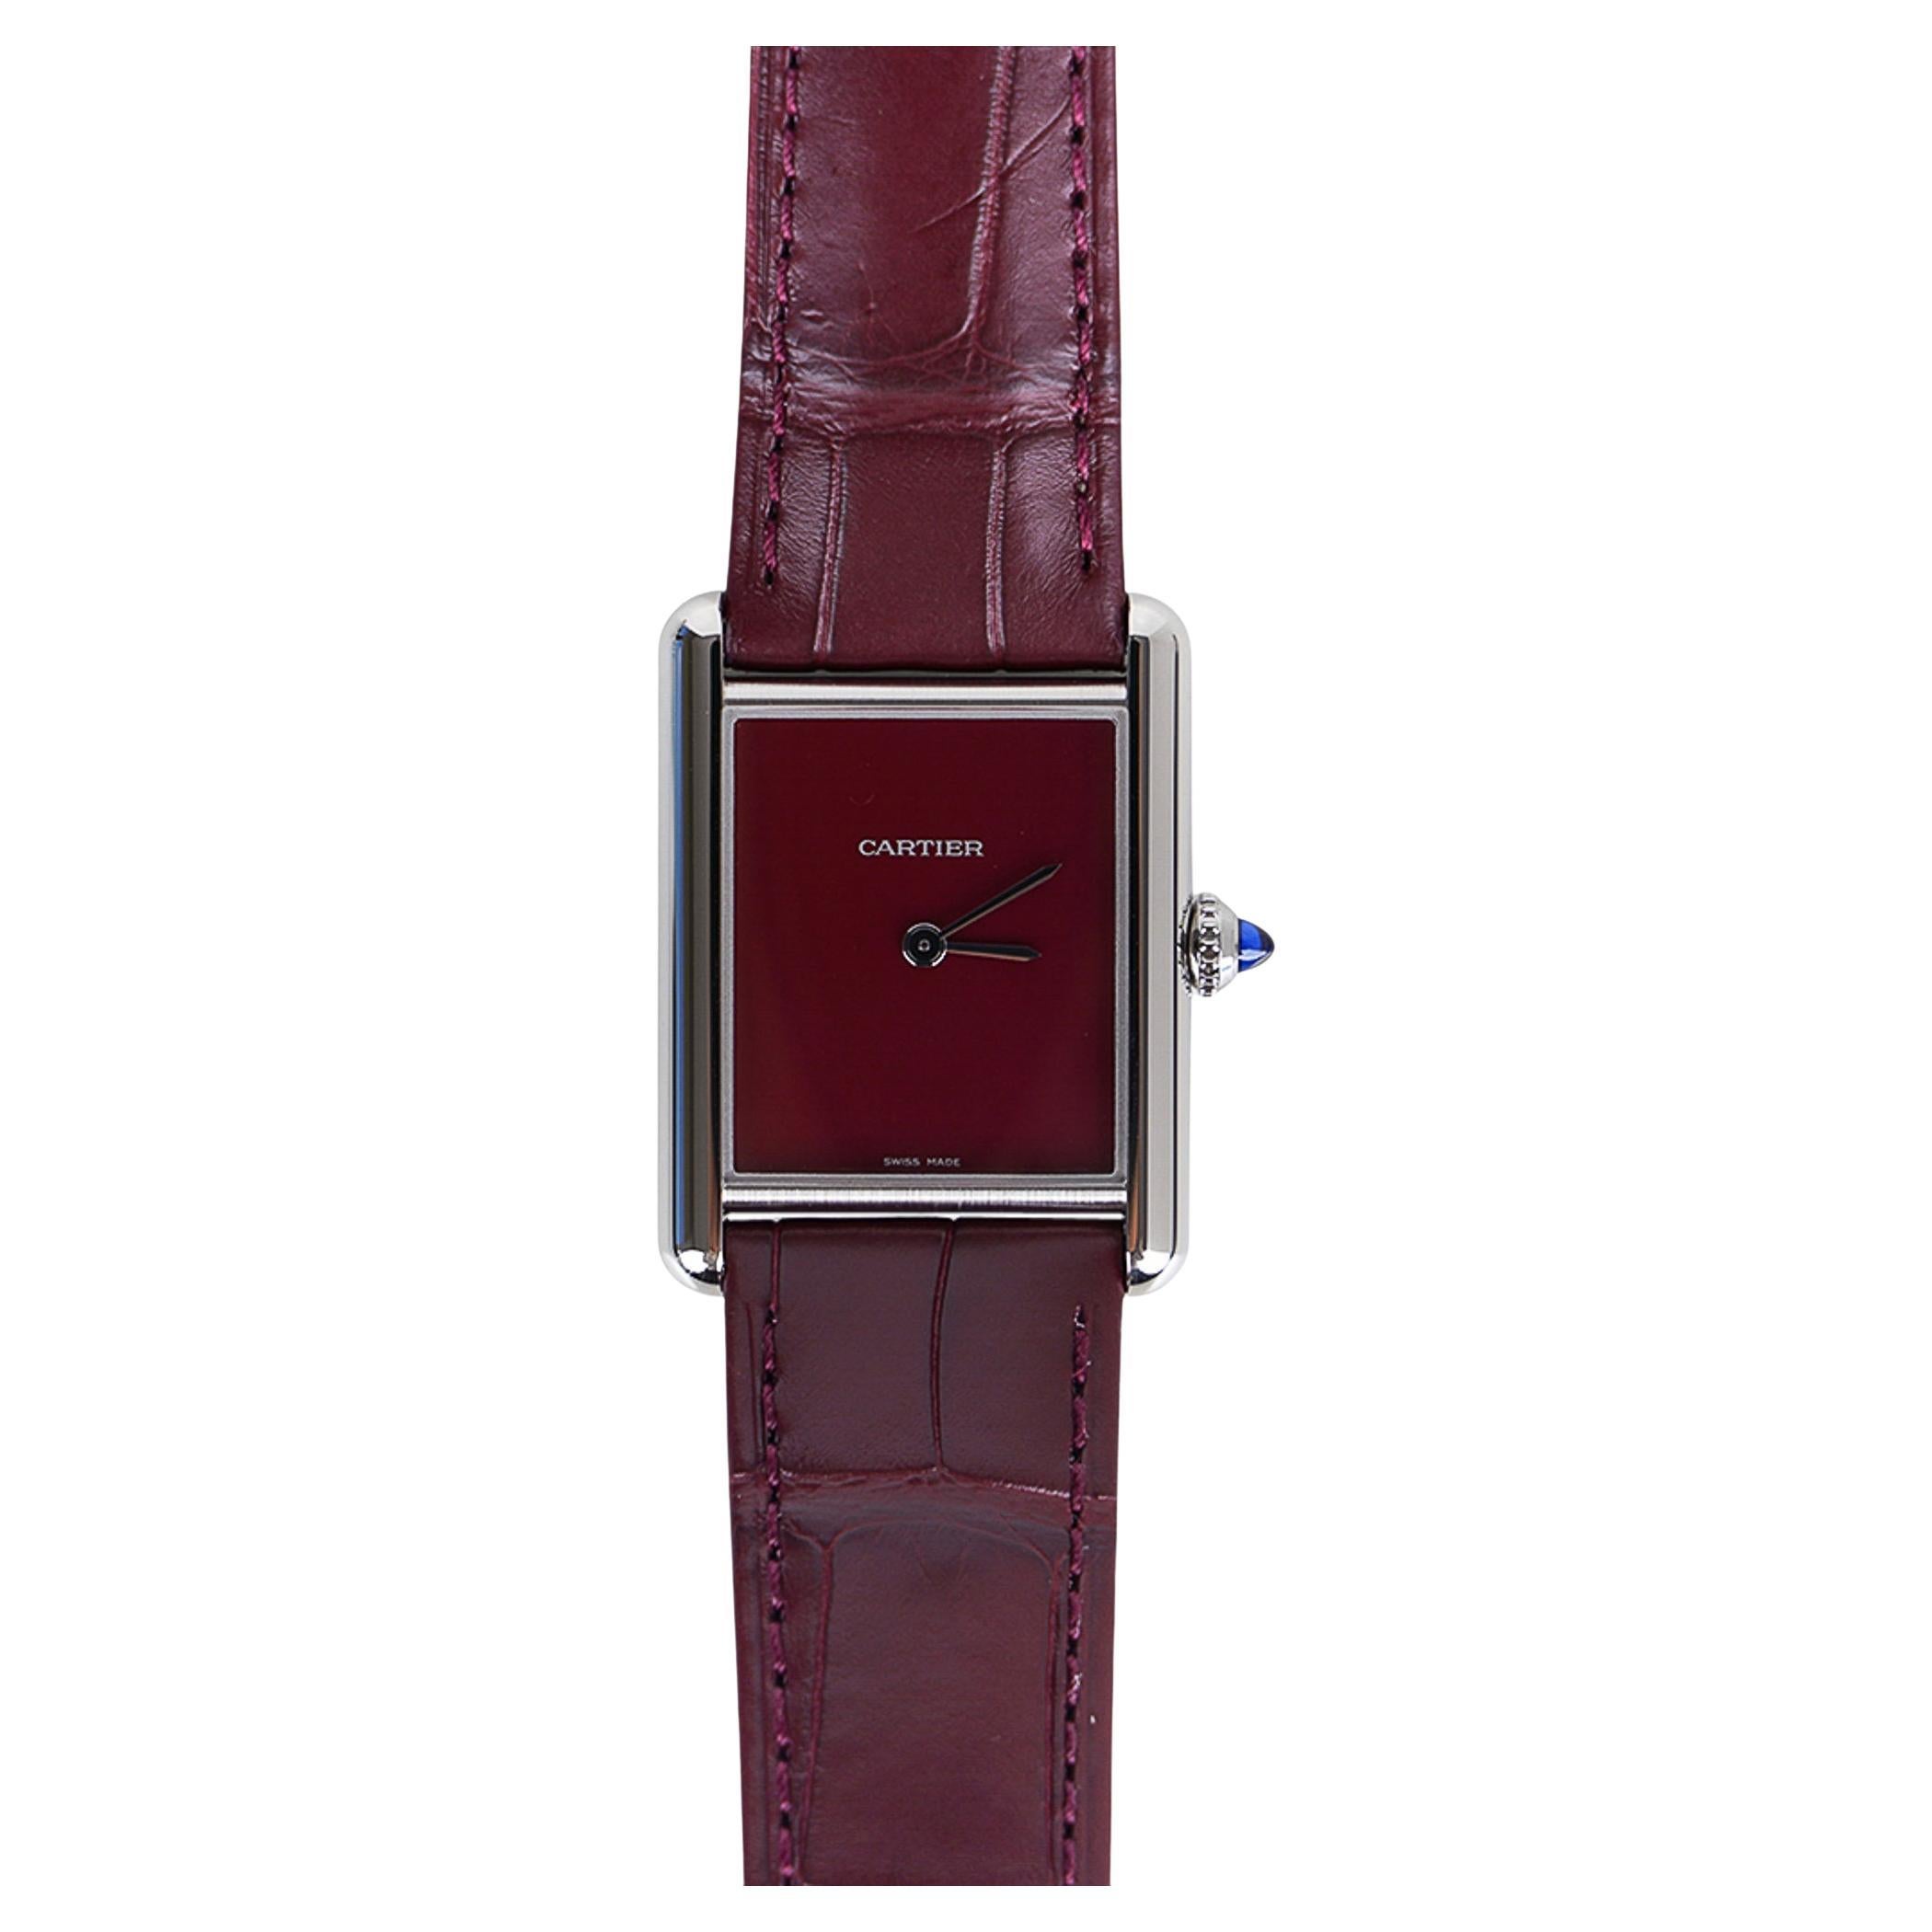 Cartier Tank Must de Cartier Watch Burgundy 2021 Limited Edition New w/ Box